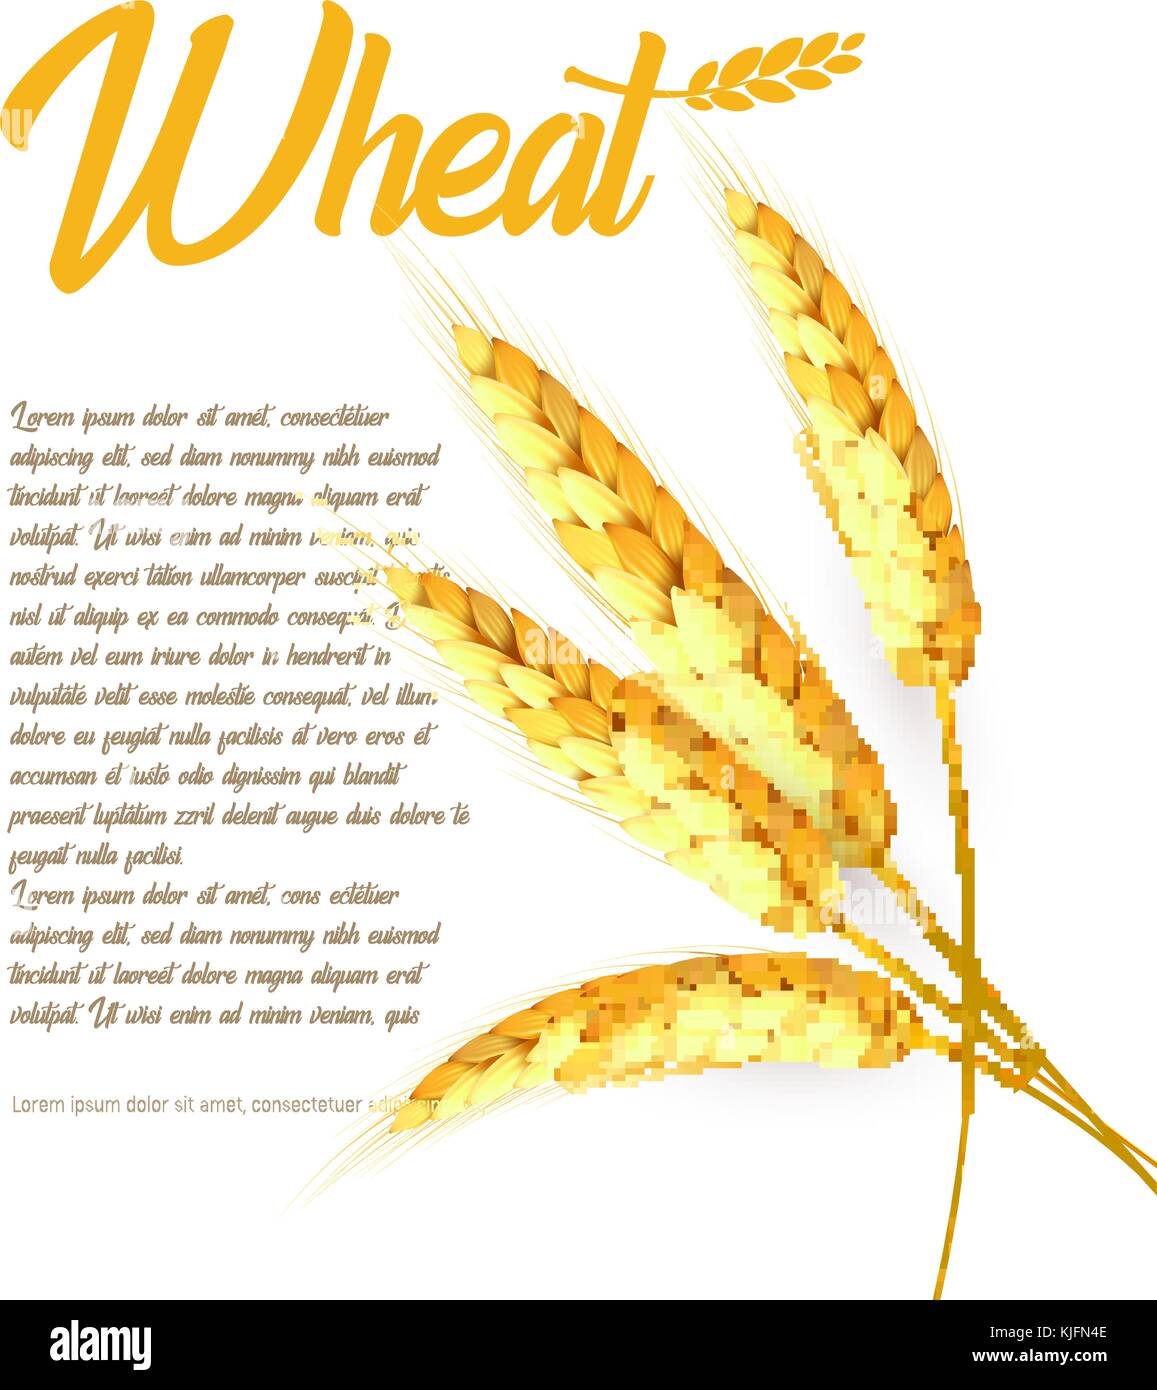 Le grain de blé, orge, avoine, riz, s/n l'agriculture. lumineux couleur or harvest Illustration de Vecteur